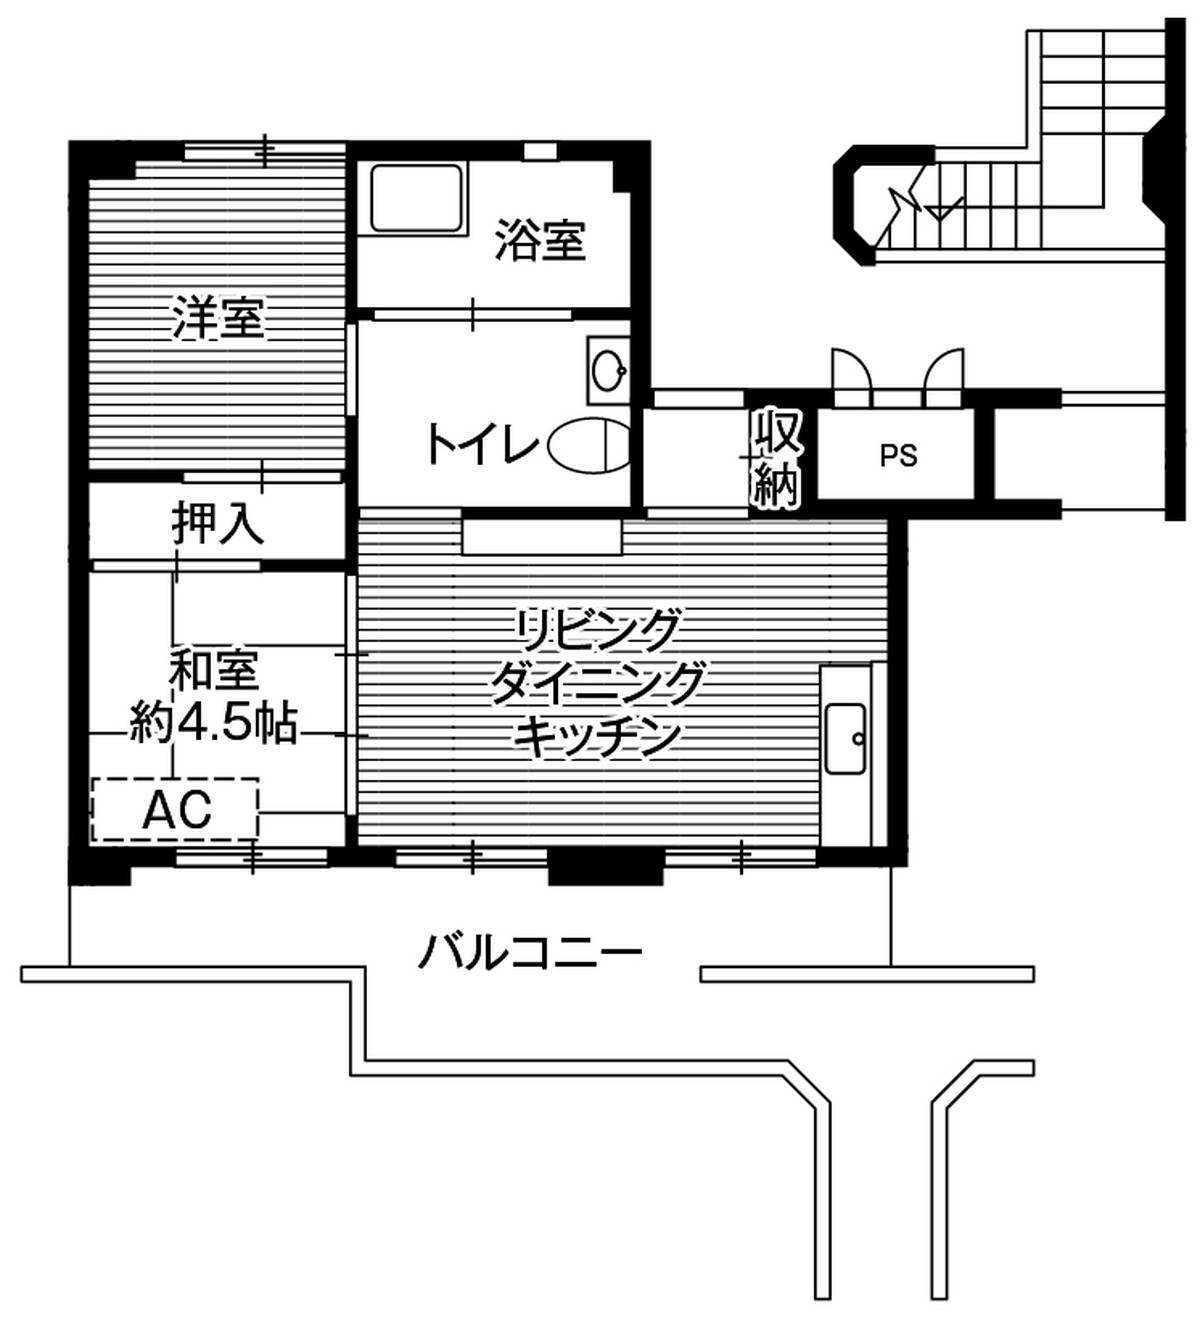 2LDK floorplan of Village House Kataguchi in Imizu-shi